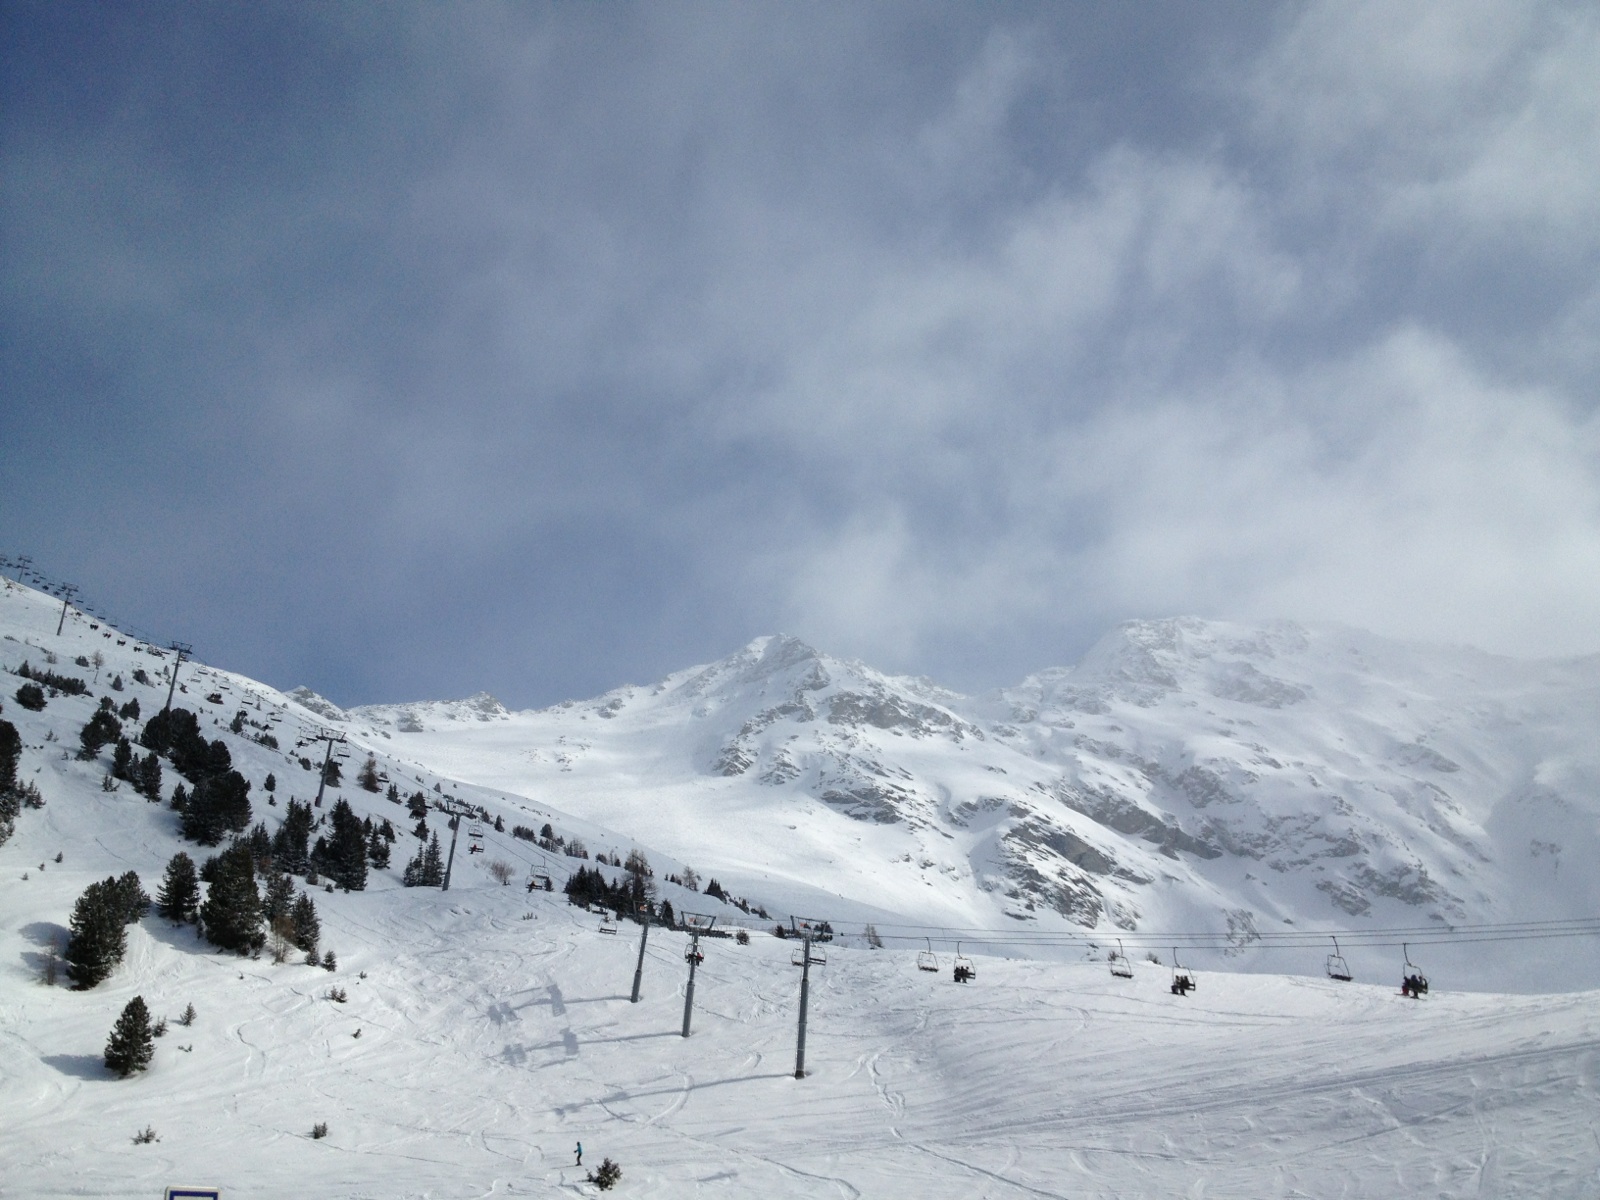 Location Ski Saint Lary Soulan